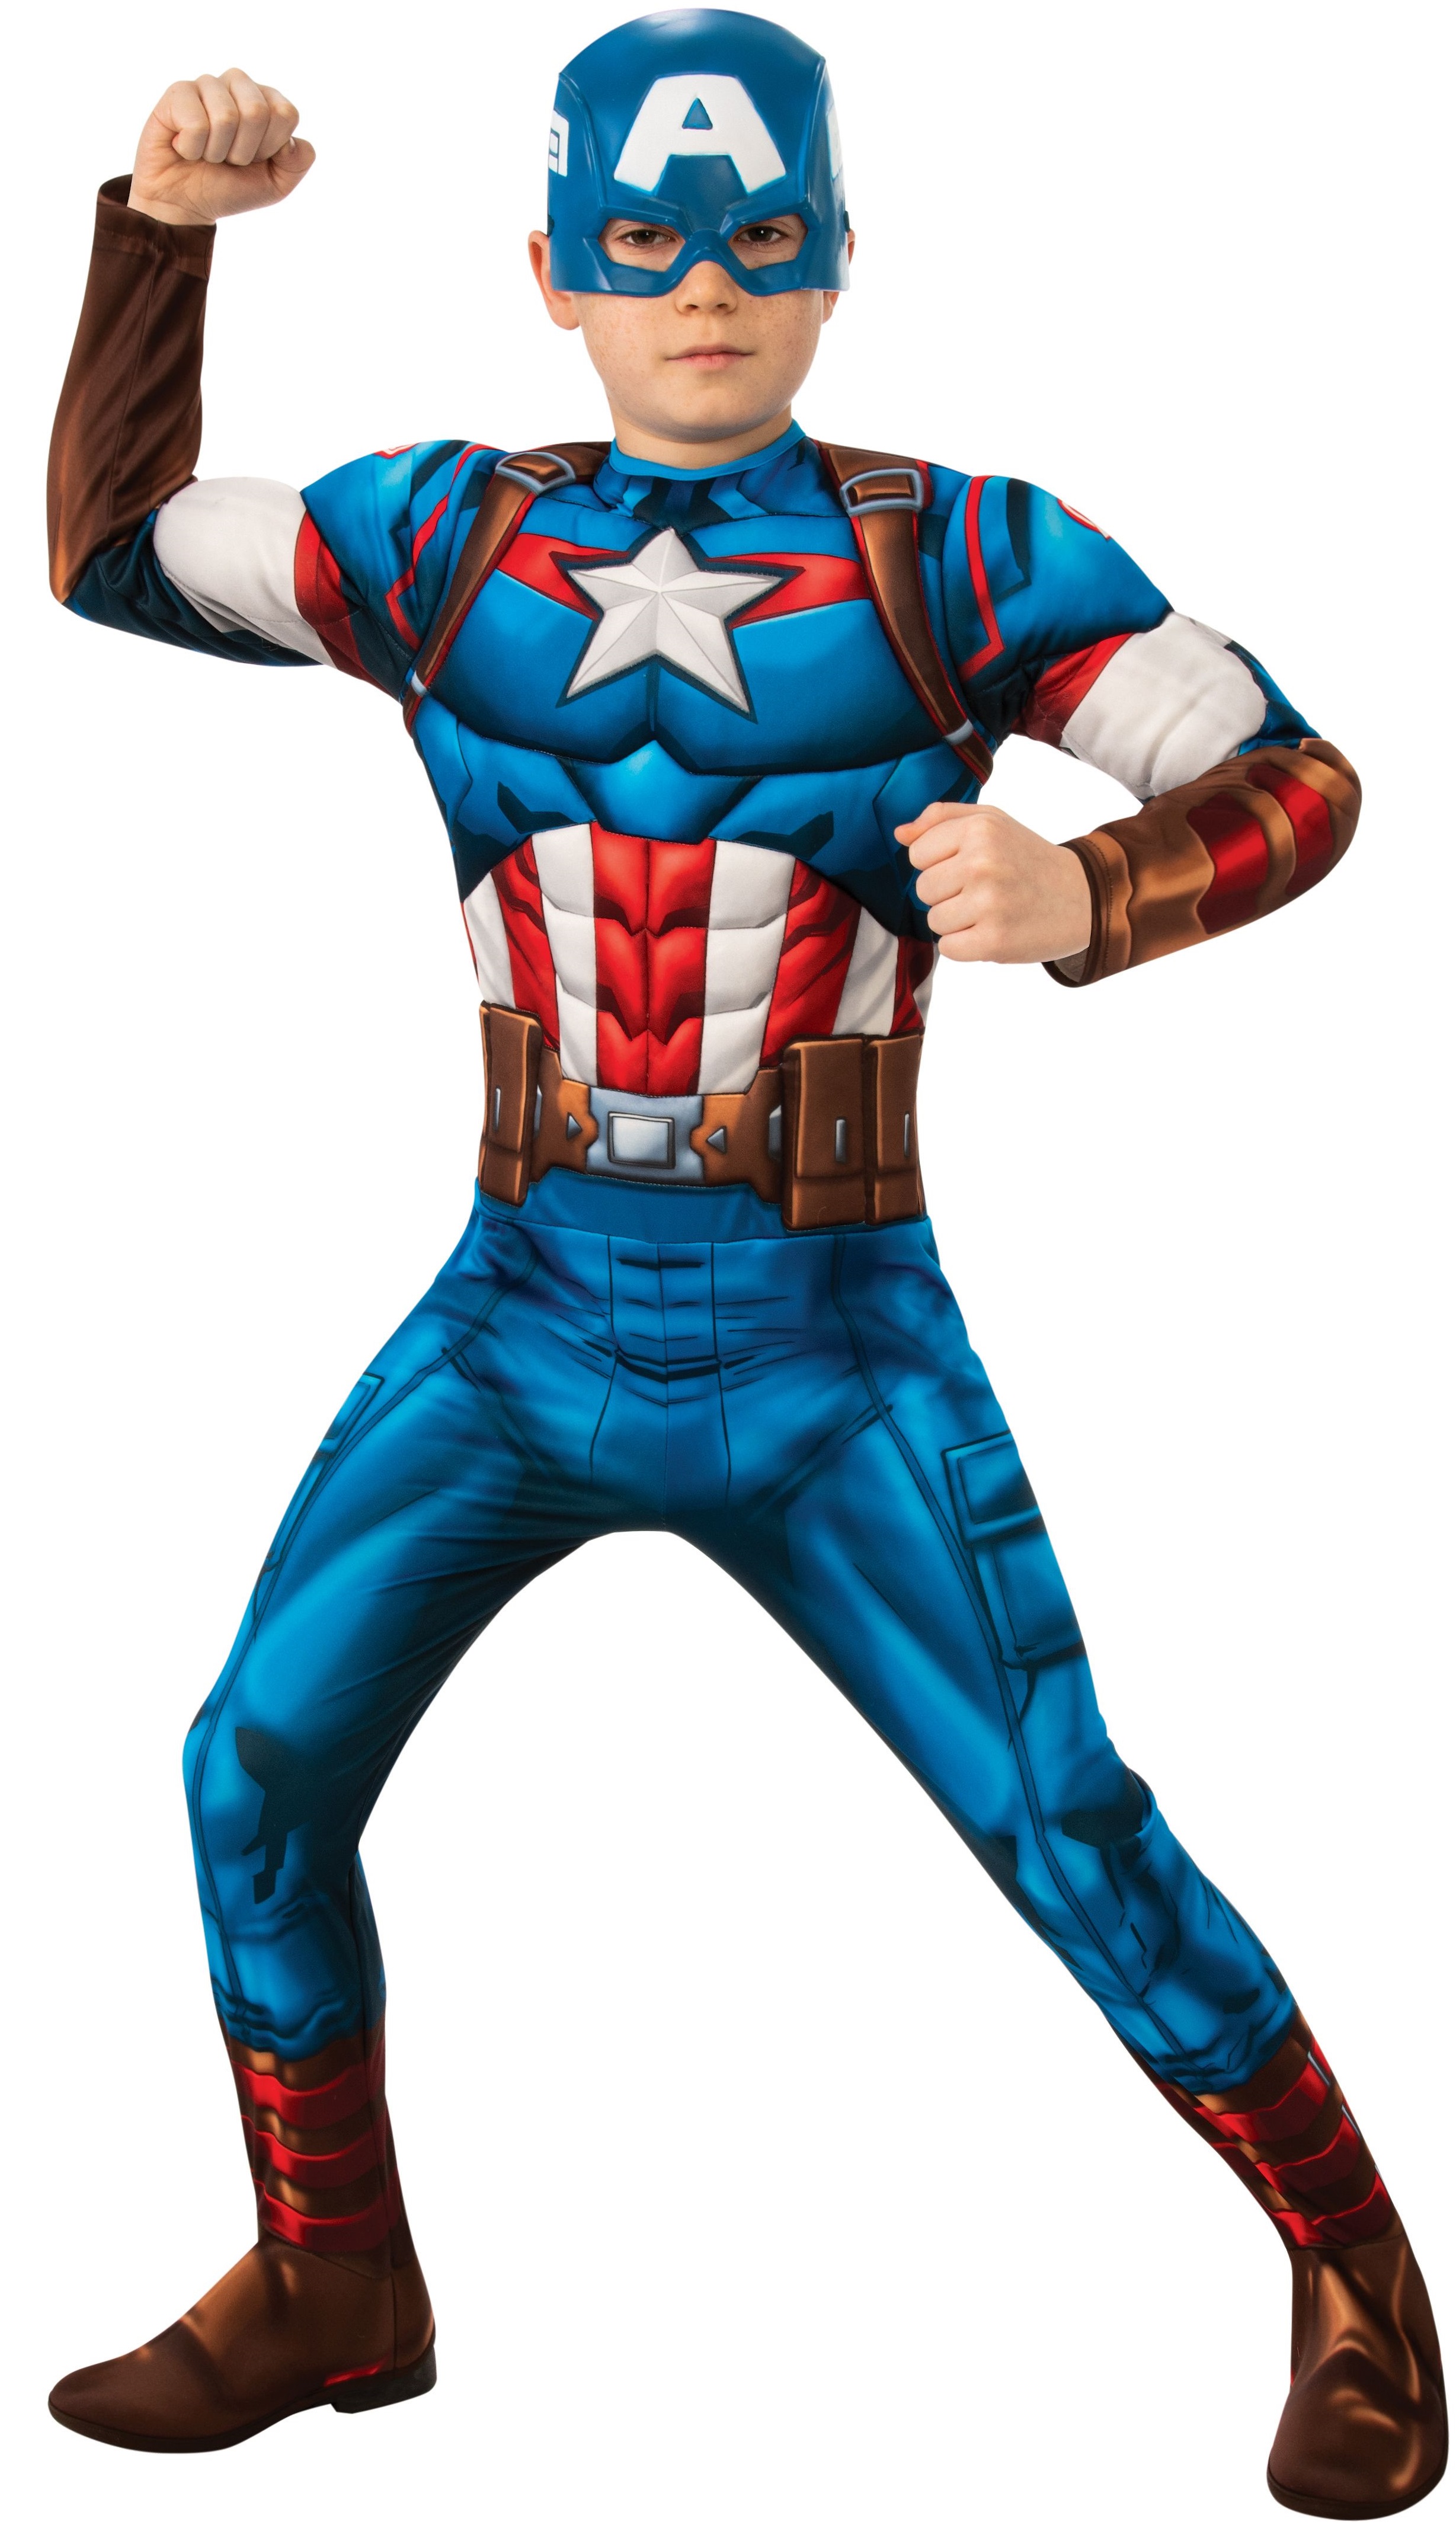 Billede af Avengers Captain America Deluxe Børnekostume (Str. L/128)